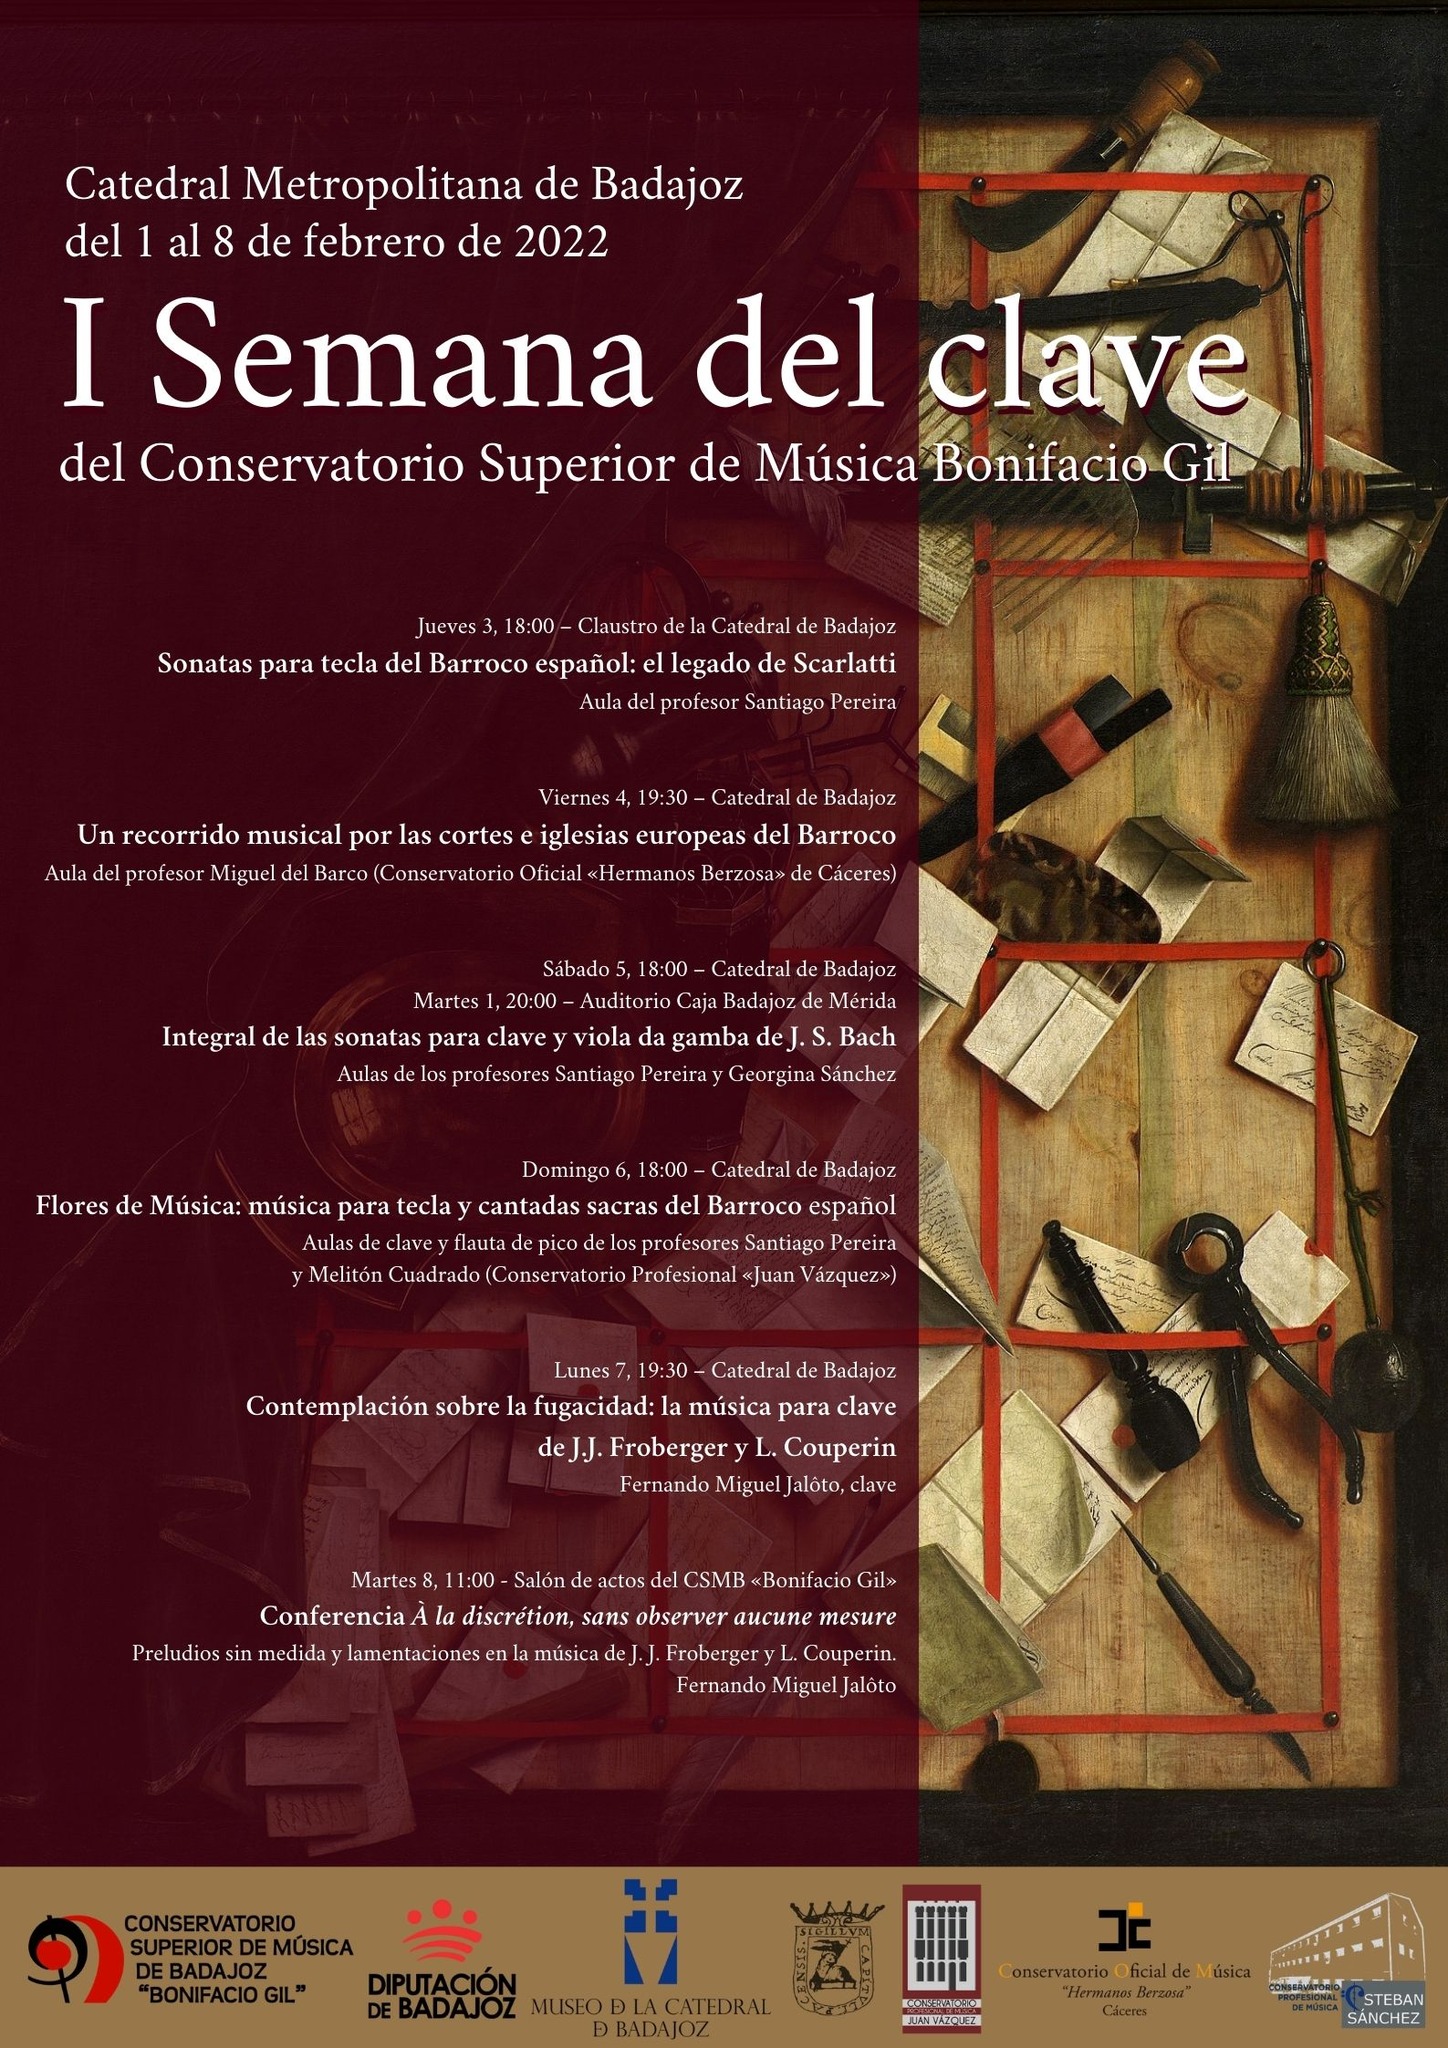 I SEMANA DEL CLAVE | Sonatas para tecla del Barroco español: el legado de Scarlatti